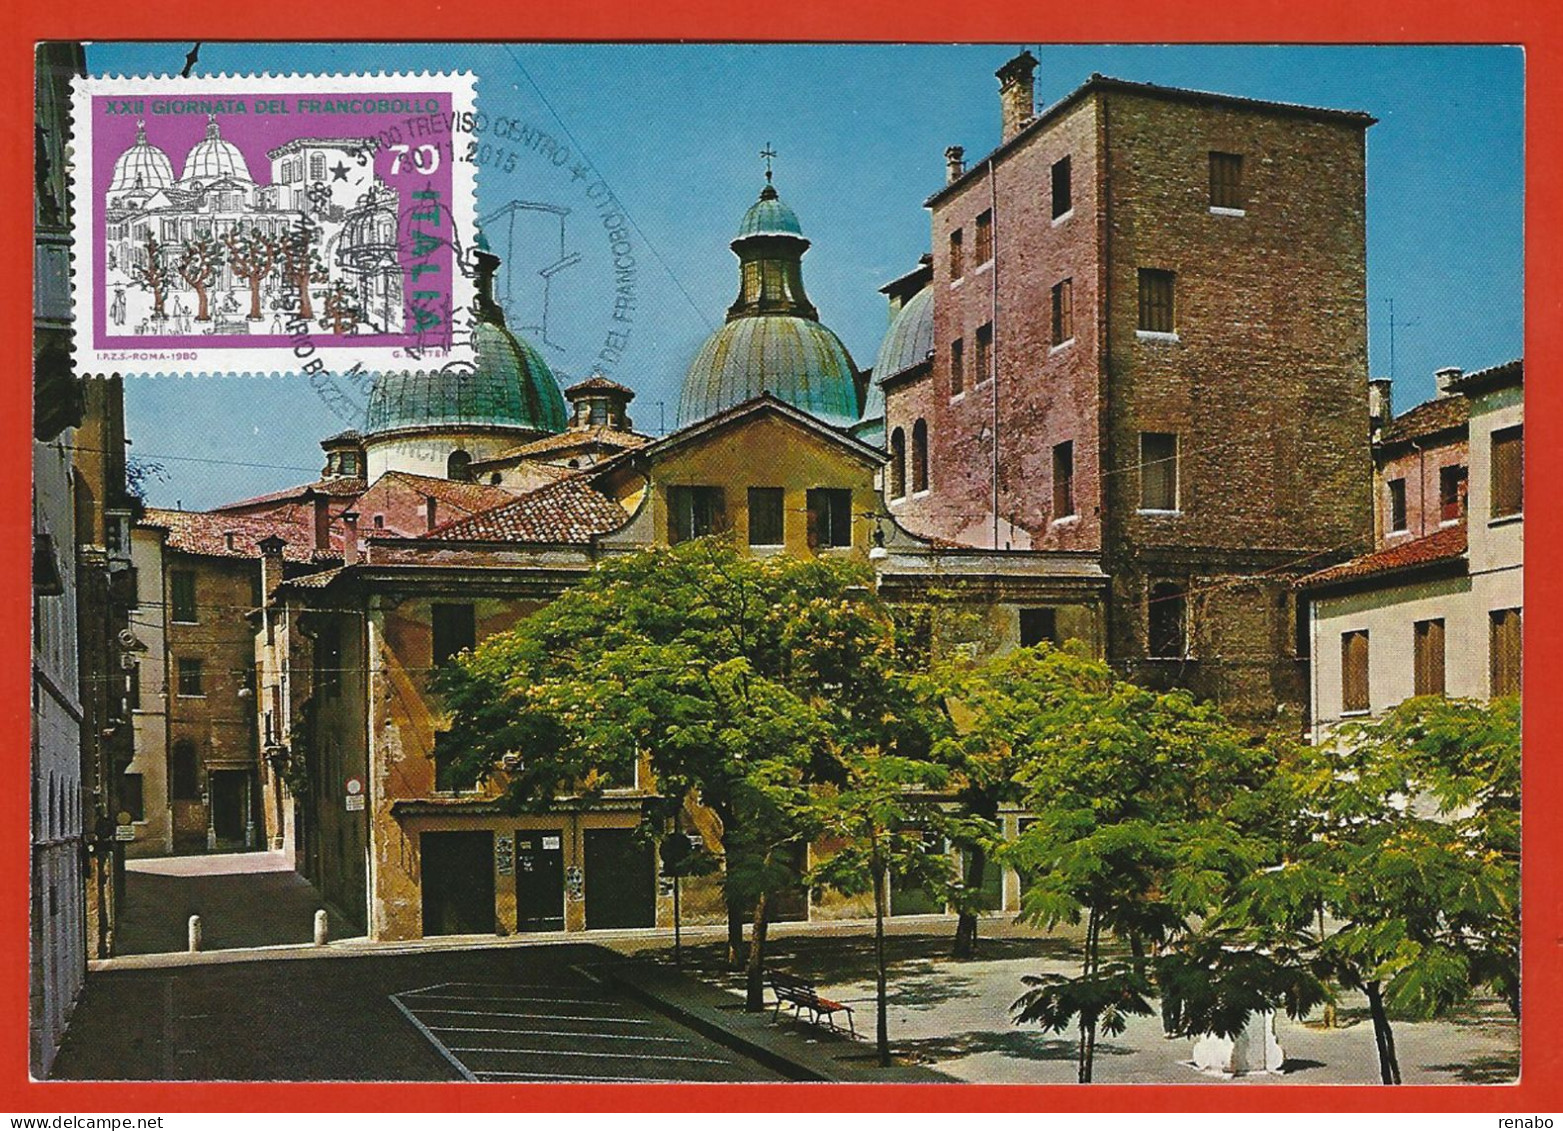 Italia 2015; Maximum Card, Piazza Pola A Treviso In: Giornata Francobollo 1980, In Cartolina, Annullo Speciale. - Maximumkaarten